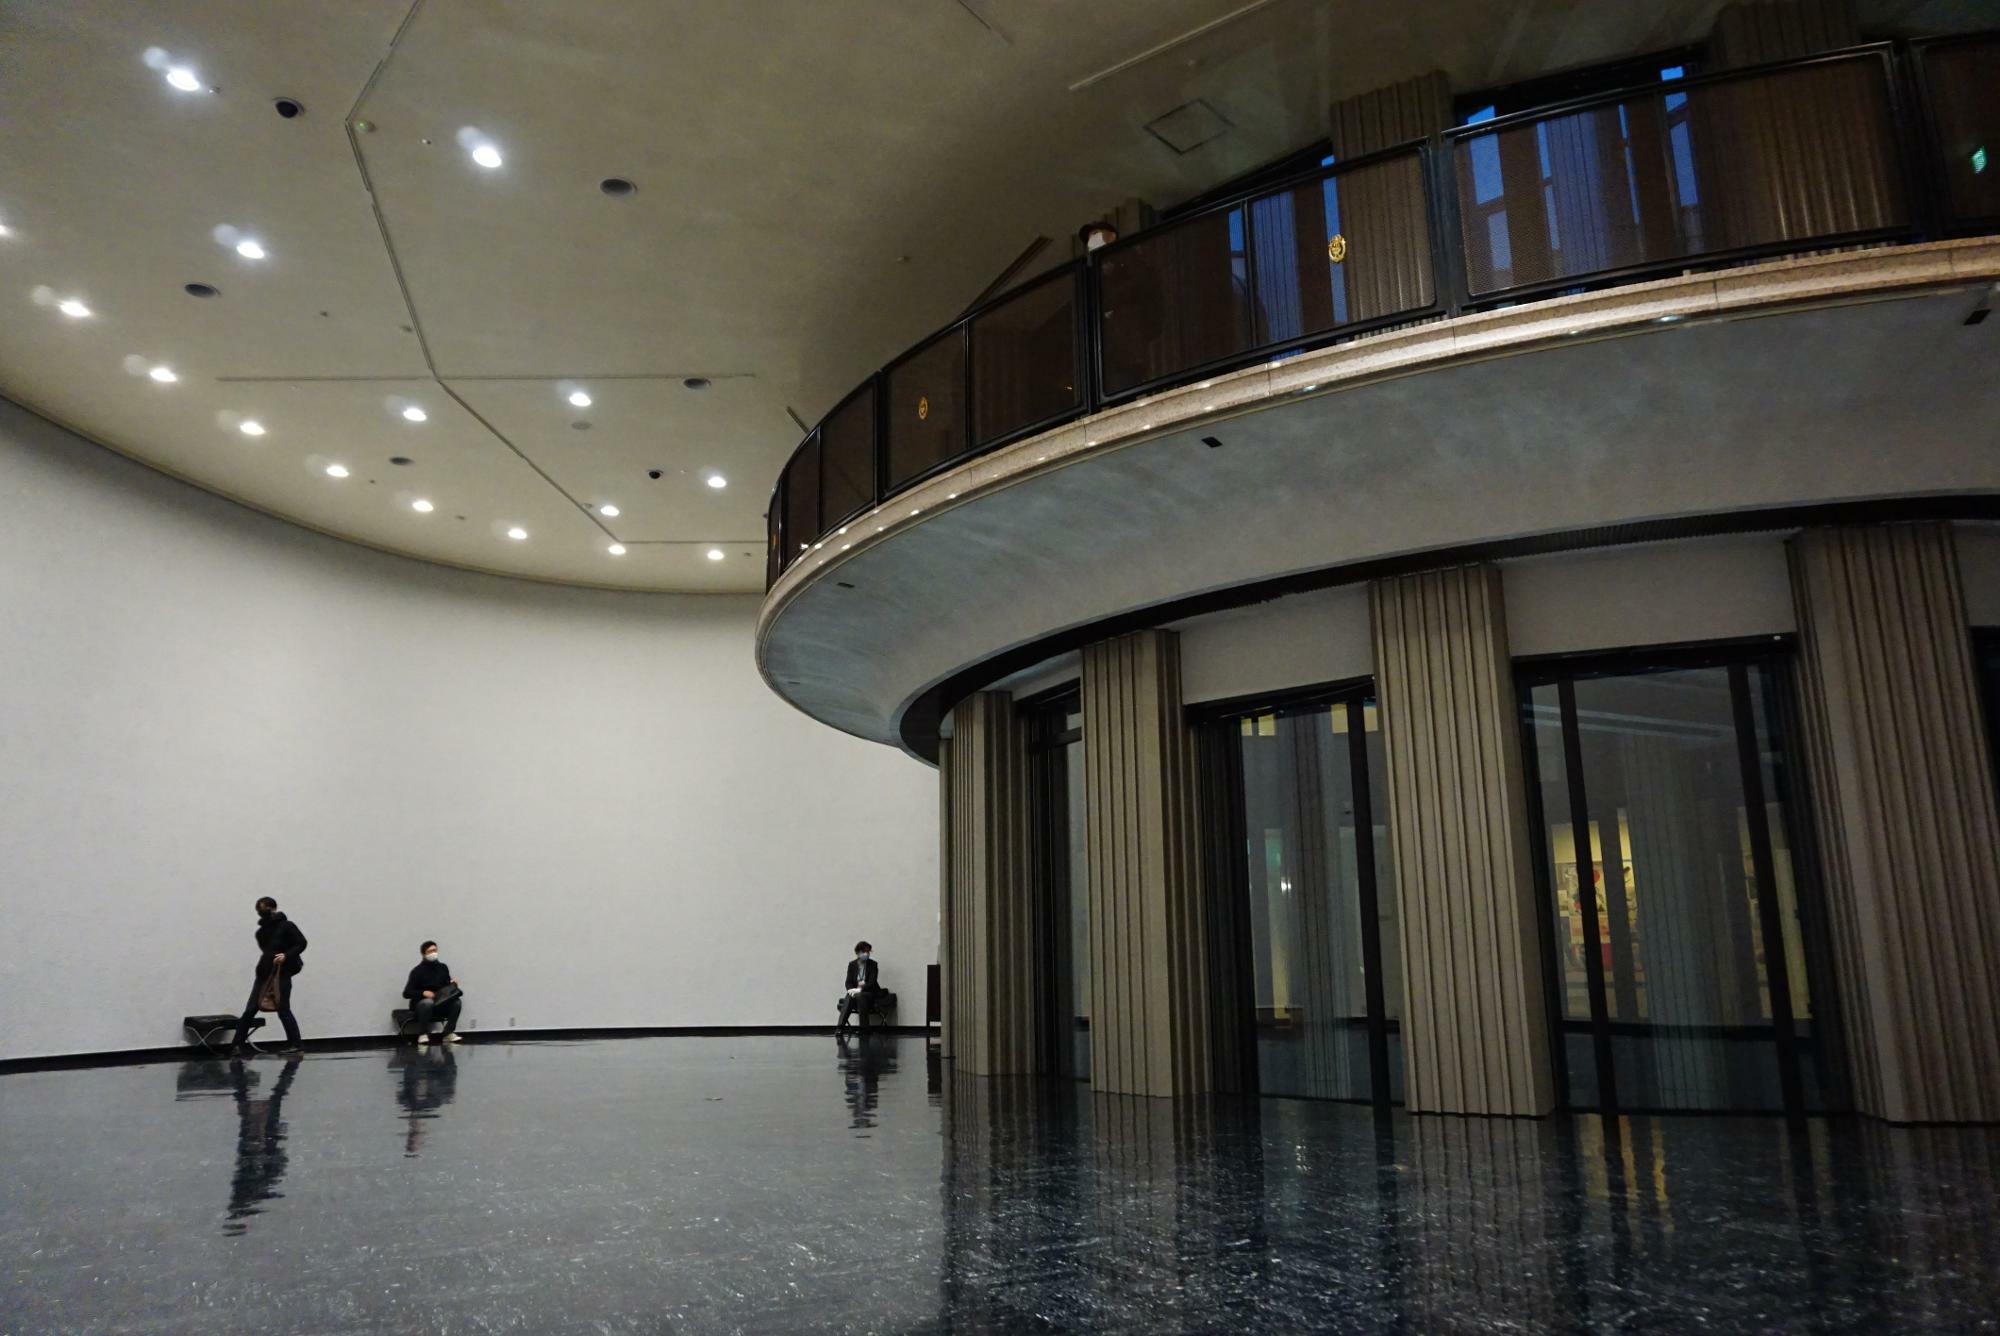 展示空間に置かれているのは、白井がセレクトしたというミース・ファン・デル・ローエのバルセロナ・チェアのオットマン